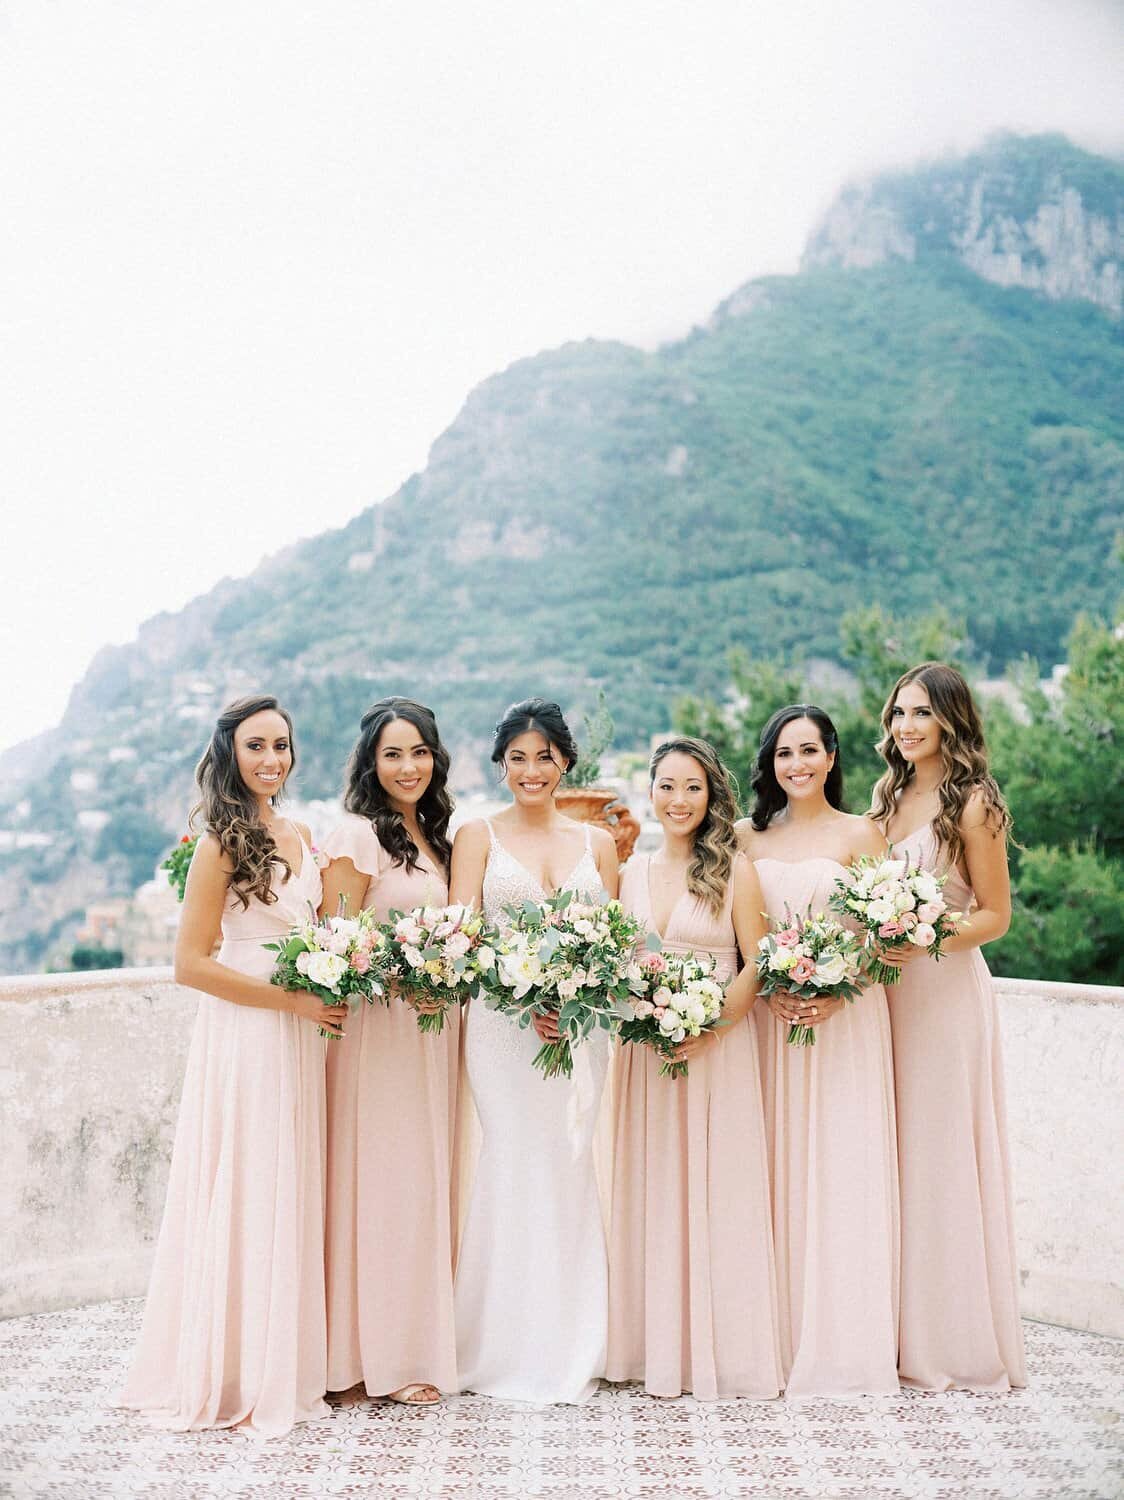 Positano-wedding-villa-San-Giacomo-bridesmaids-by-Julia-Kaptelova-Photography-241